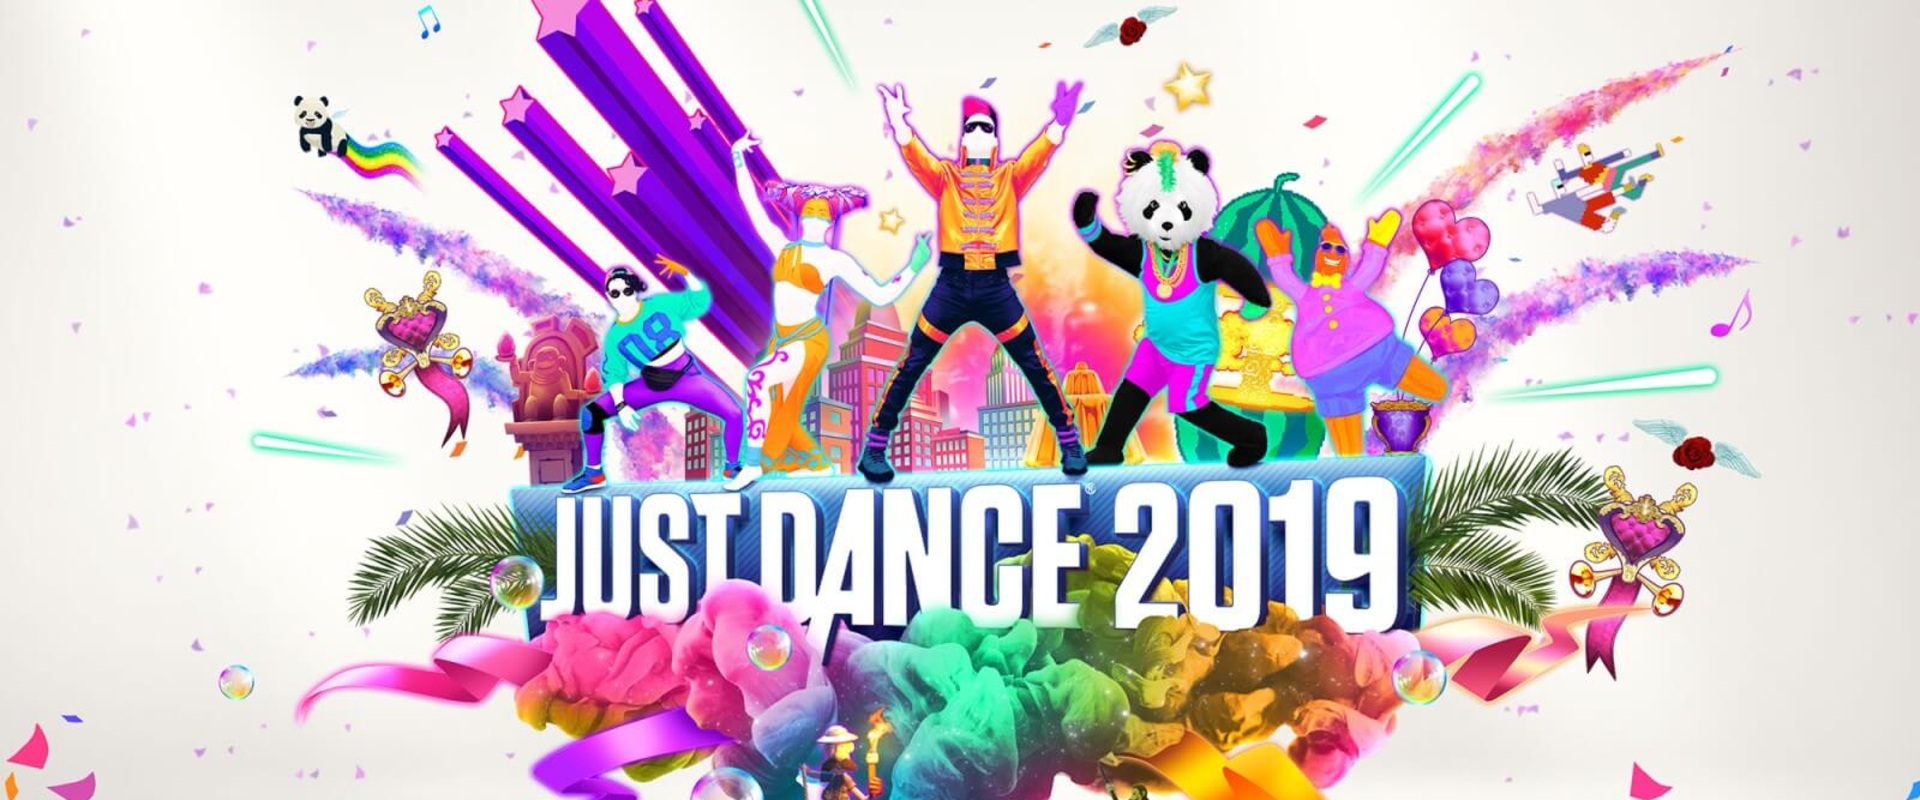 Leteszteltük a Just Dance 2019-et!